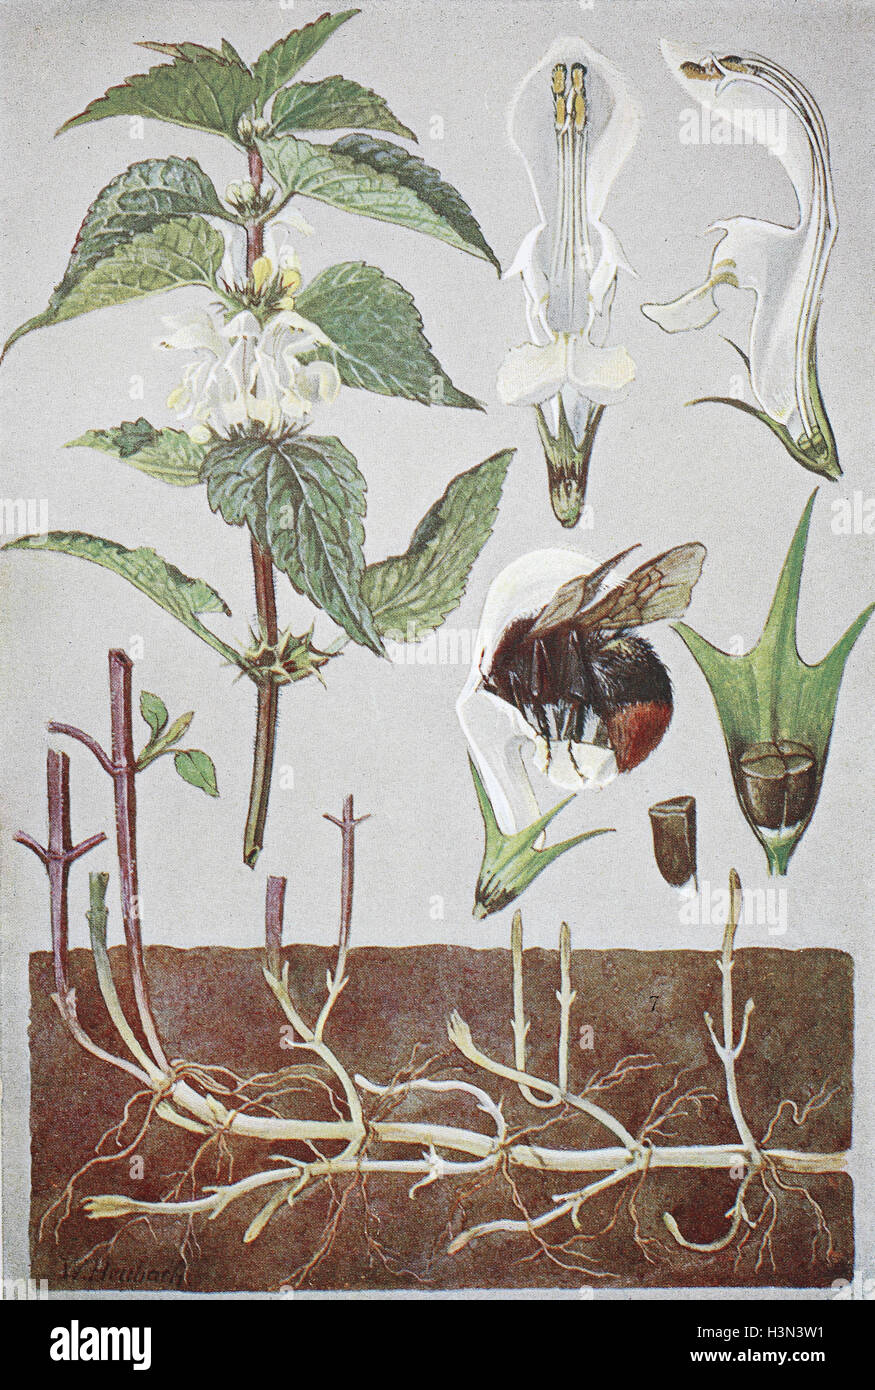 Lamium album, commonly called white nettle or white dead-nettle, historical illustration, 1880 Stock Photo